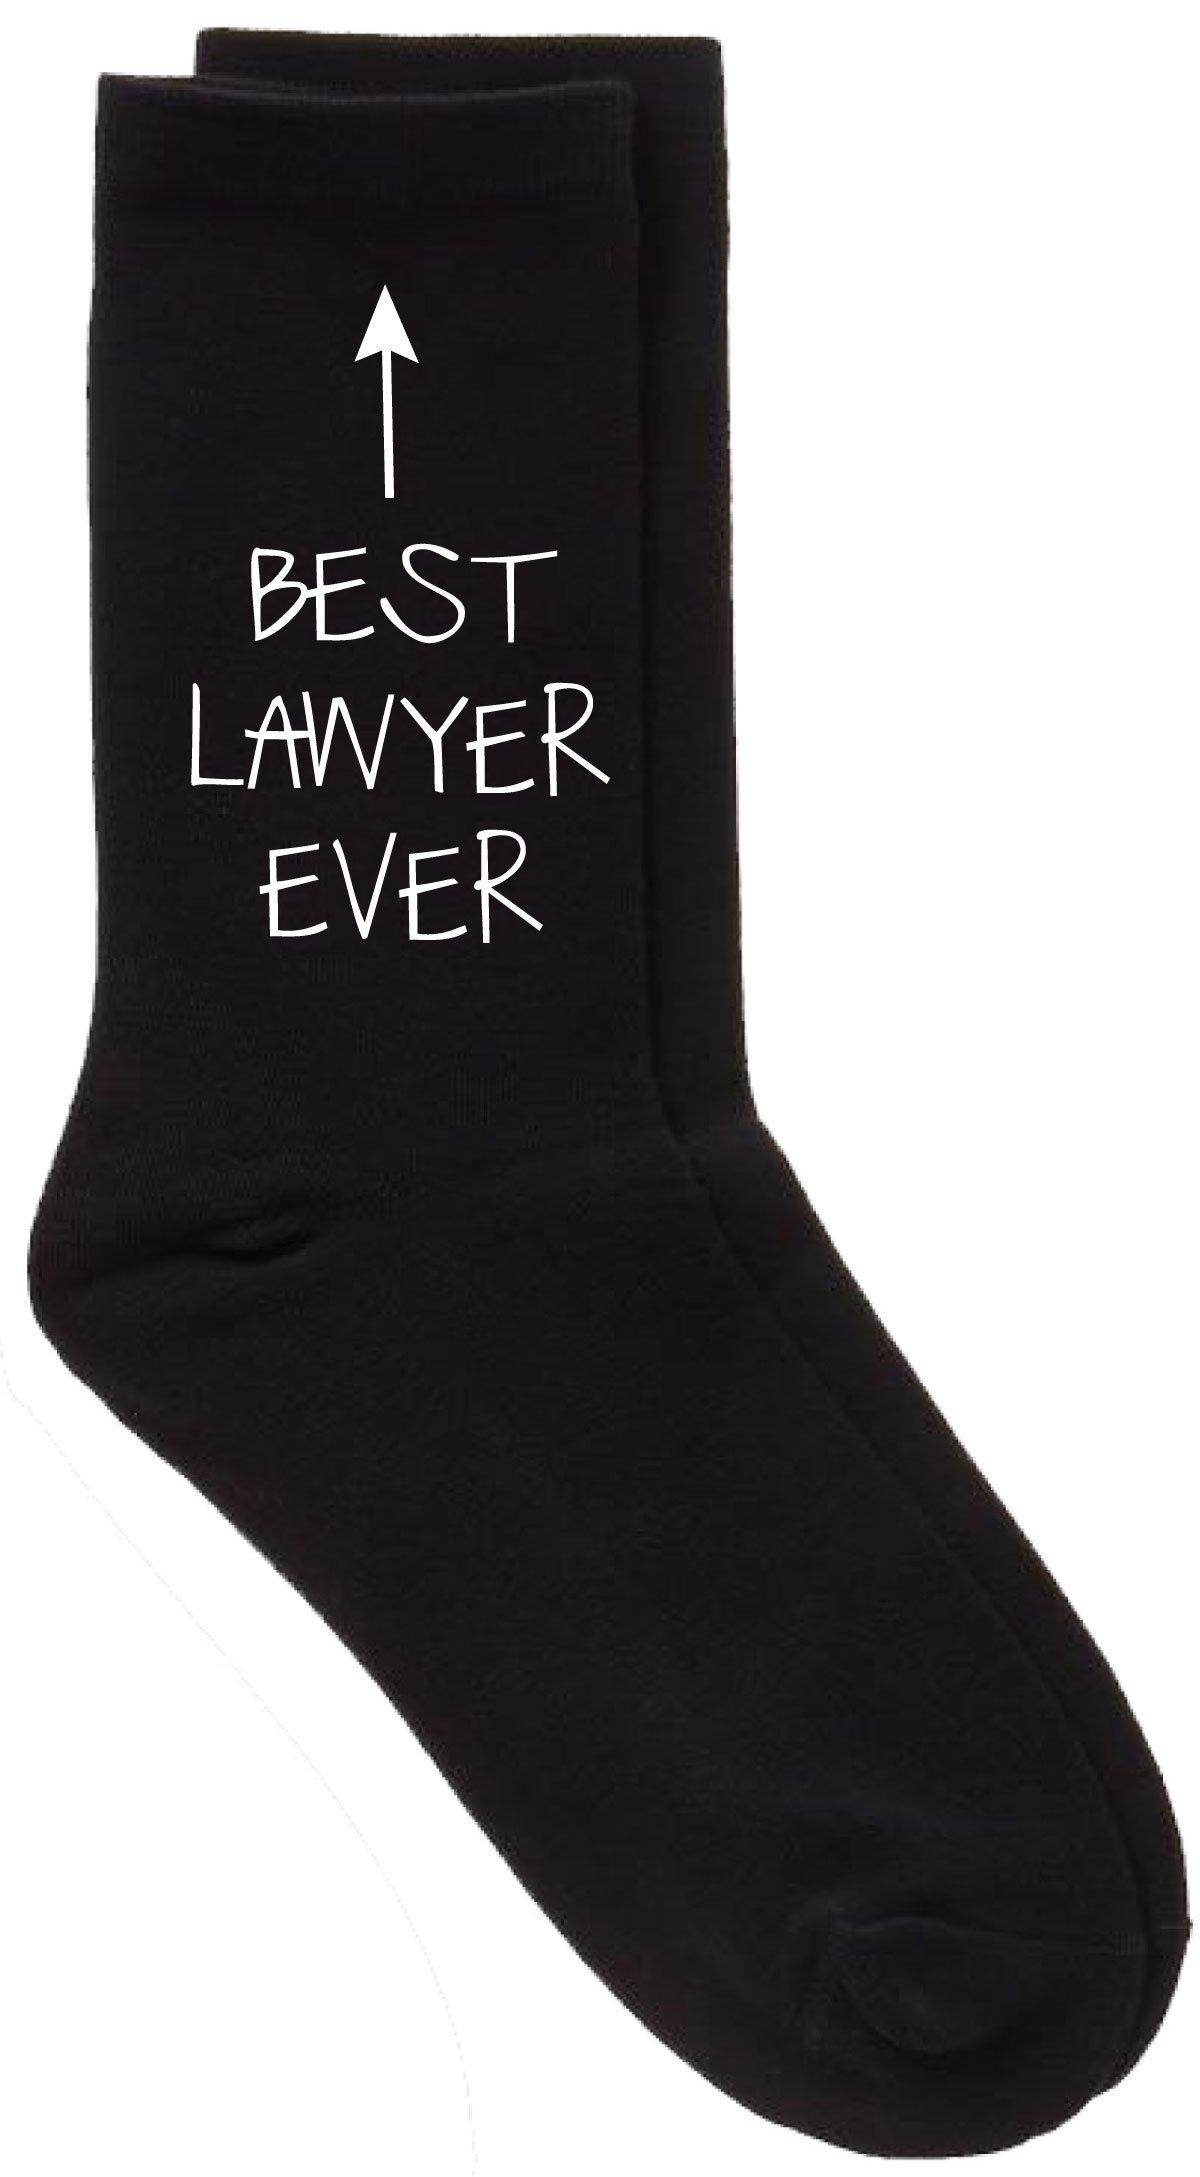 черные носки best dad ever v2 60 second makeover черный Черные носки Best Lawyer Ever 60 SECOND MAKEOVER, черный